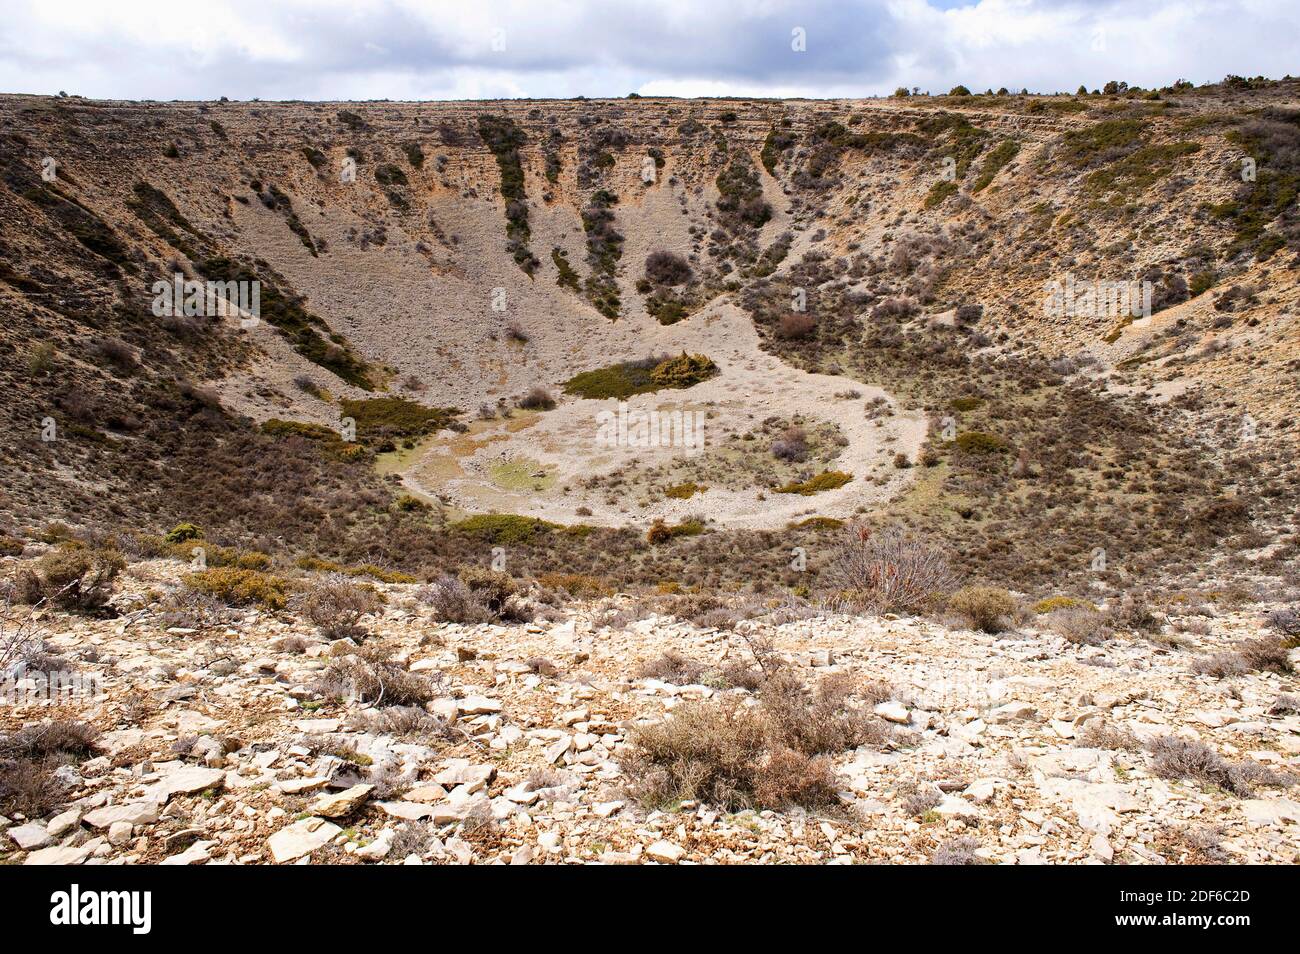 La doline ou le gouffre est un trou dans le sol causé par un cortète karstique. Cette photo a été prise à Pozondon, Teruel, Aragon, Espagne. Banque D'Images